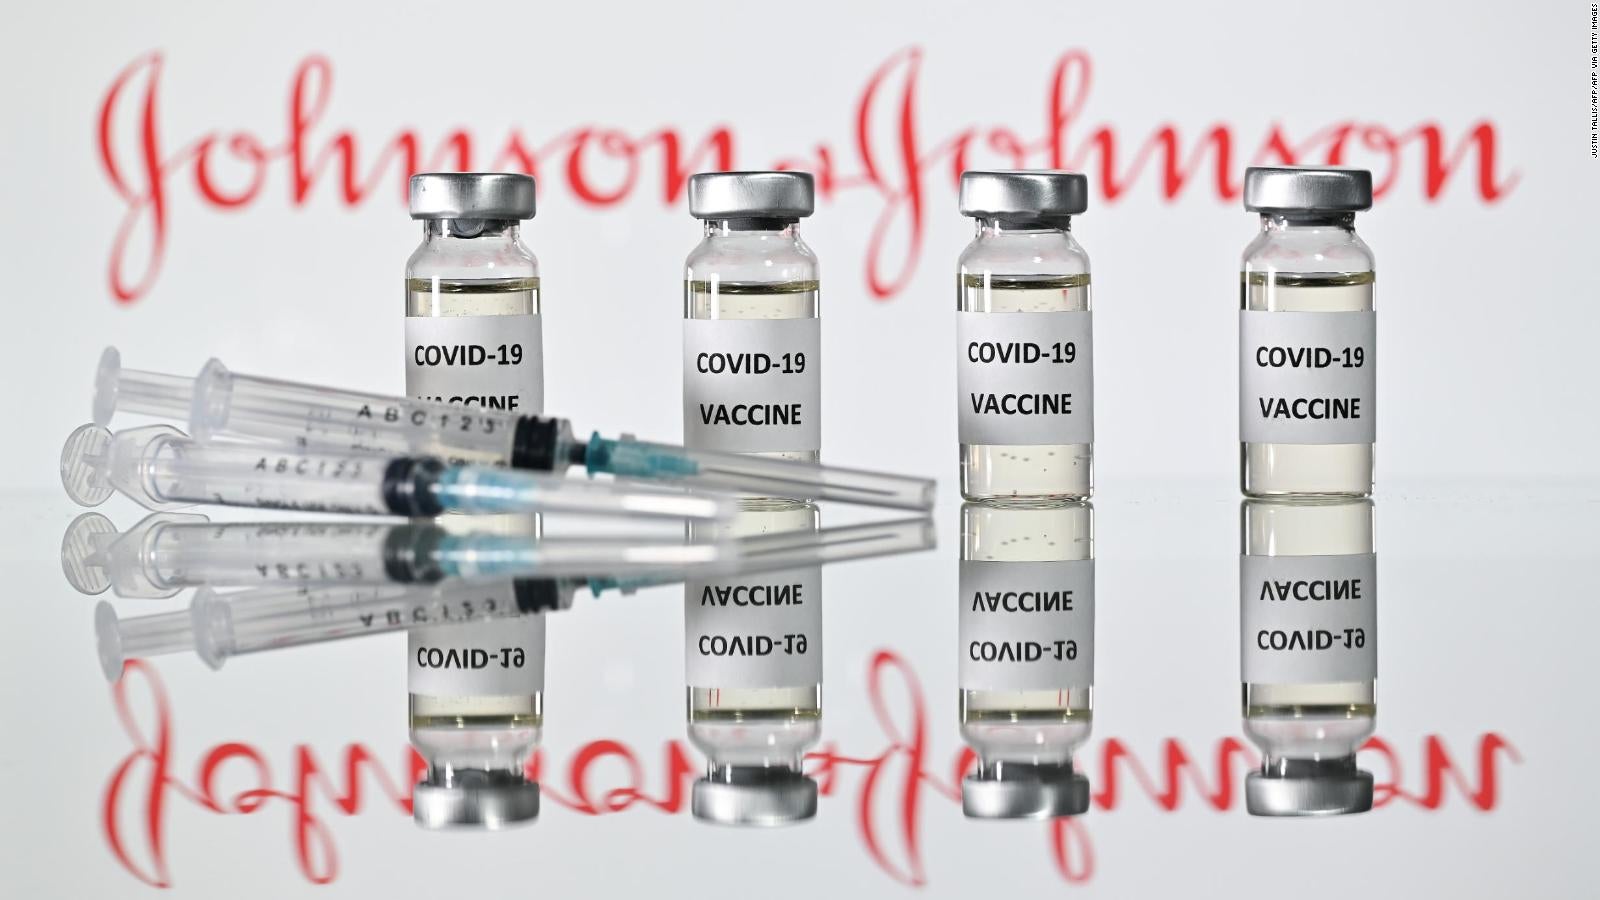 62-millones-de-dosis-de-la-vacuna-de-janssen-podr-an-estar-contaminadas